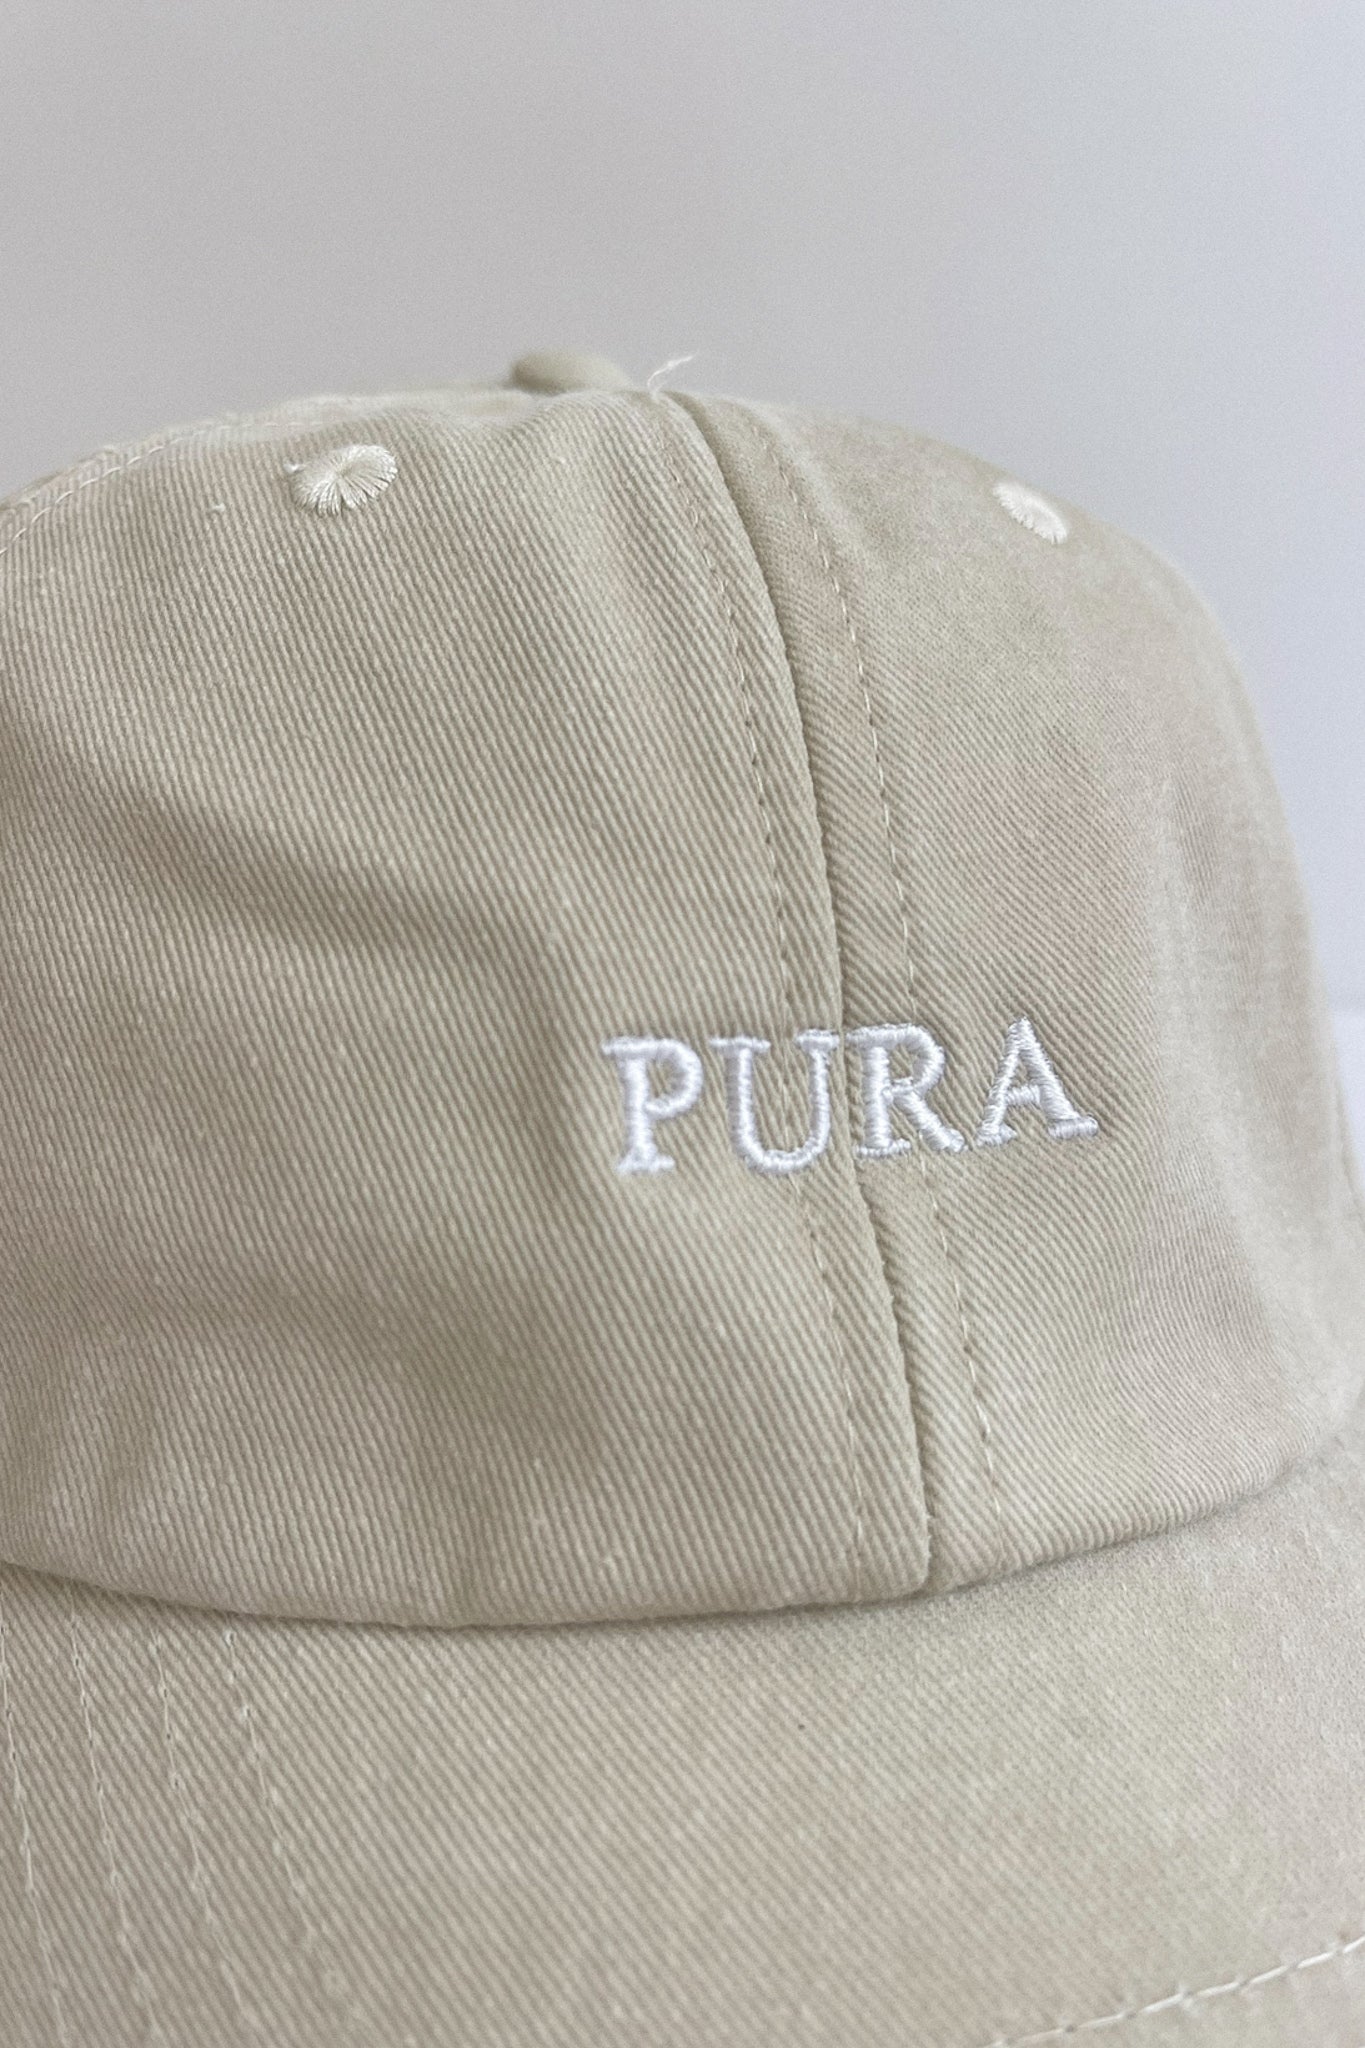 Beige Cap THE PURA aus 100% Bio-Baumwolle von Pura Clothing